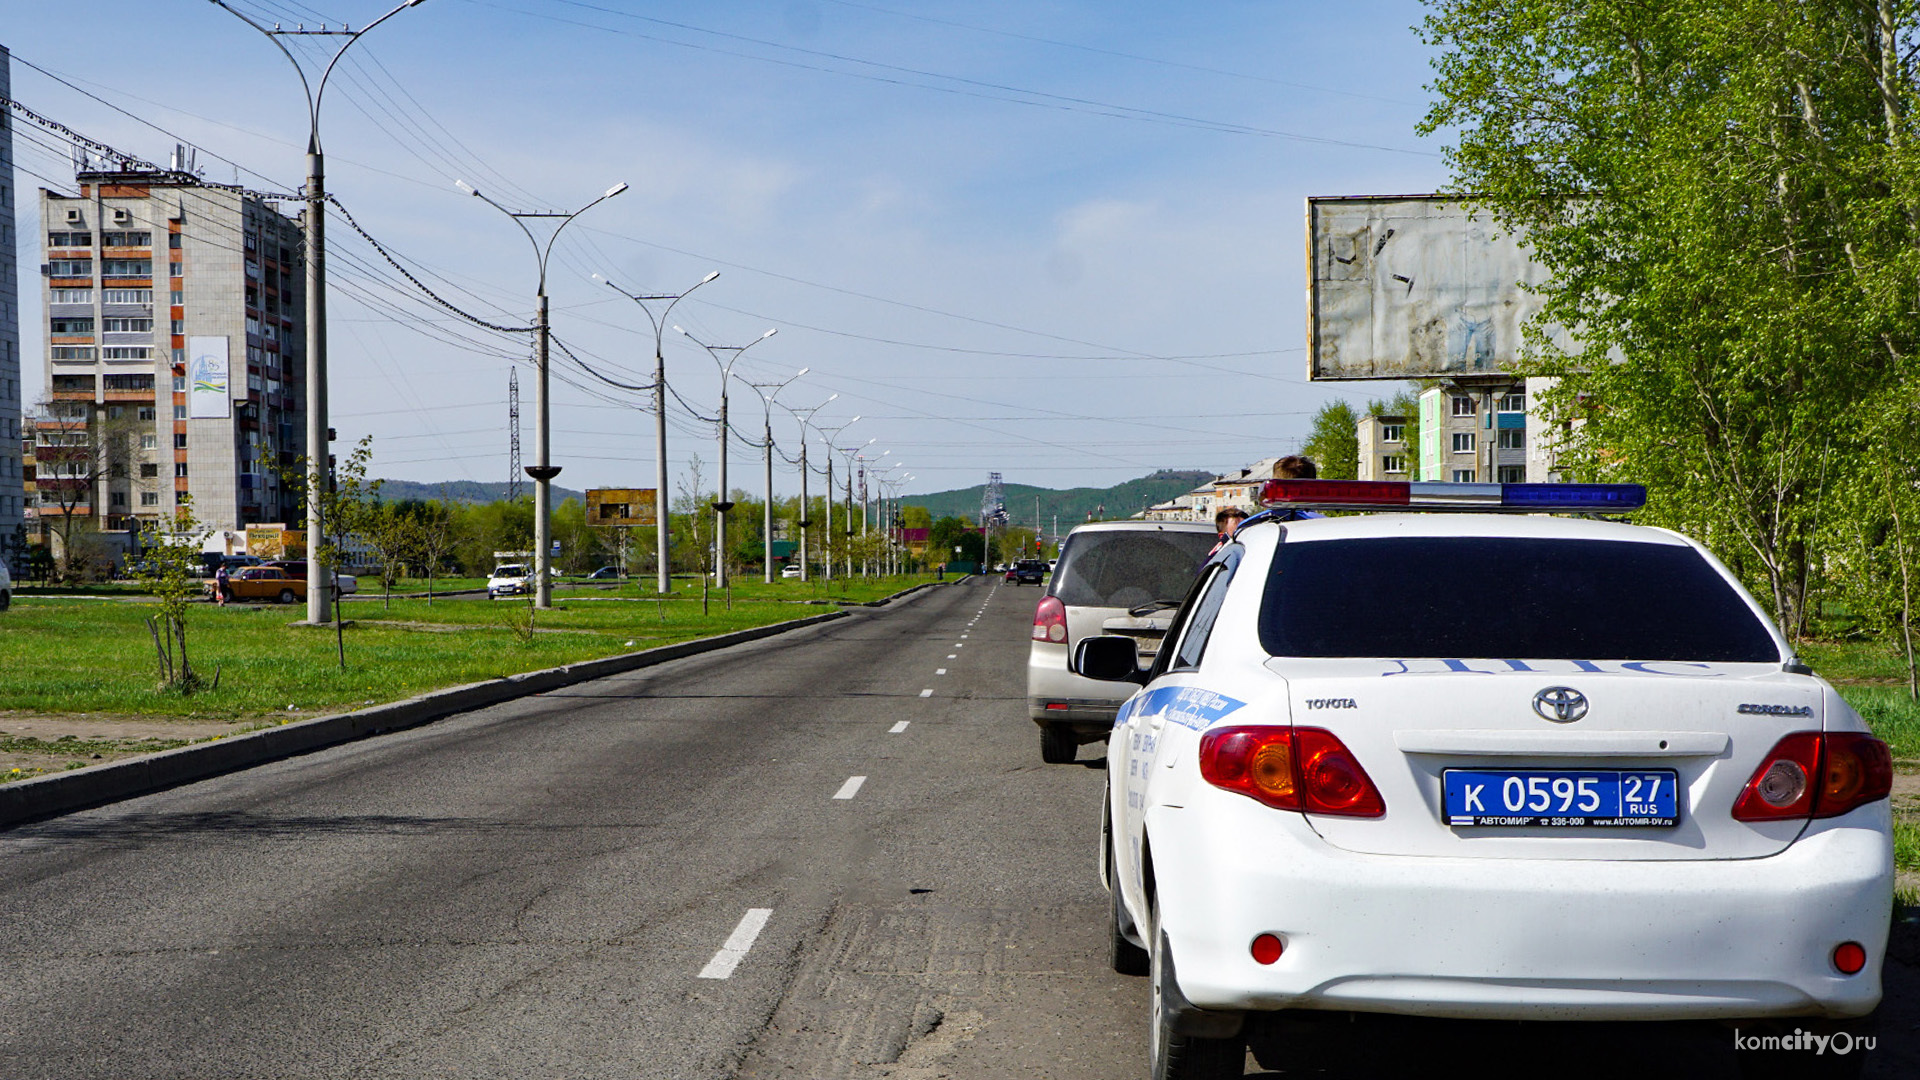 Масштабная акция по выявлению нарушителей ПДД стартовала в Комсомольске